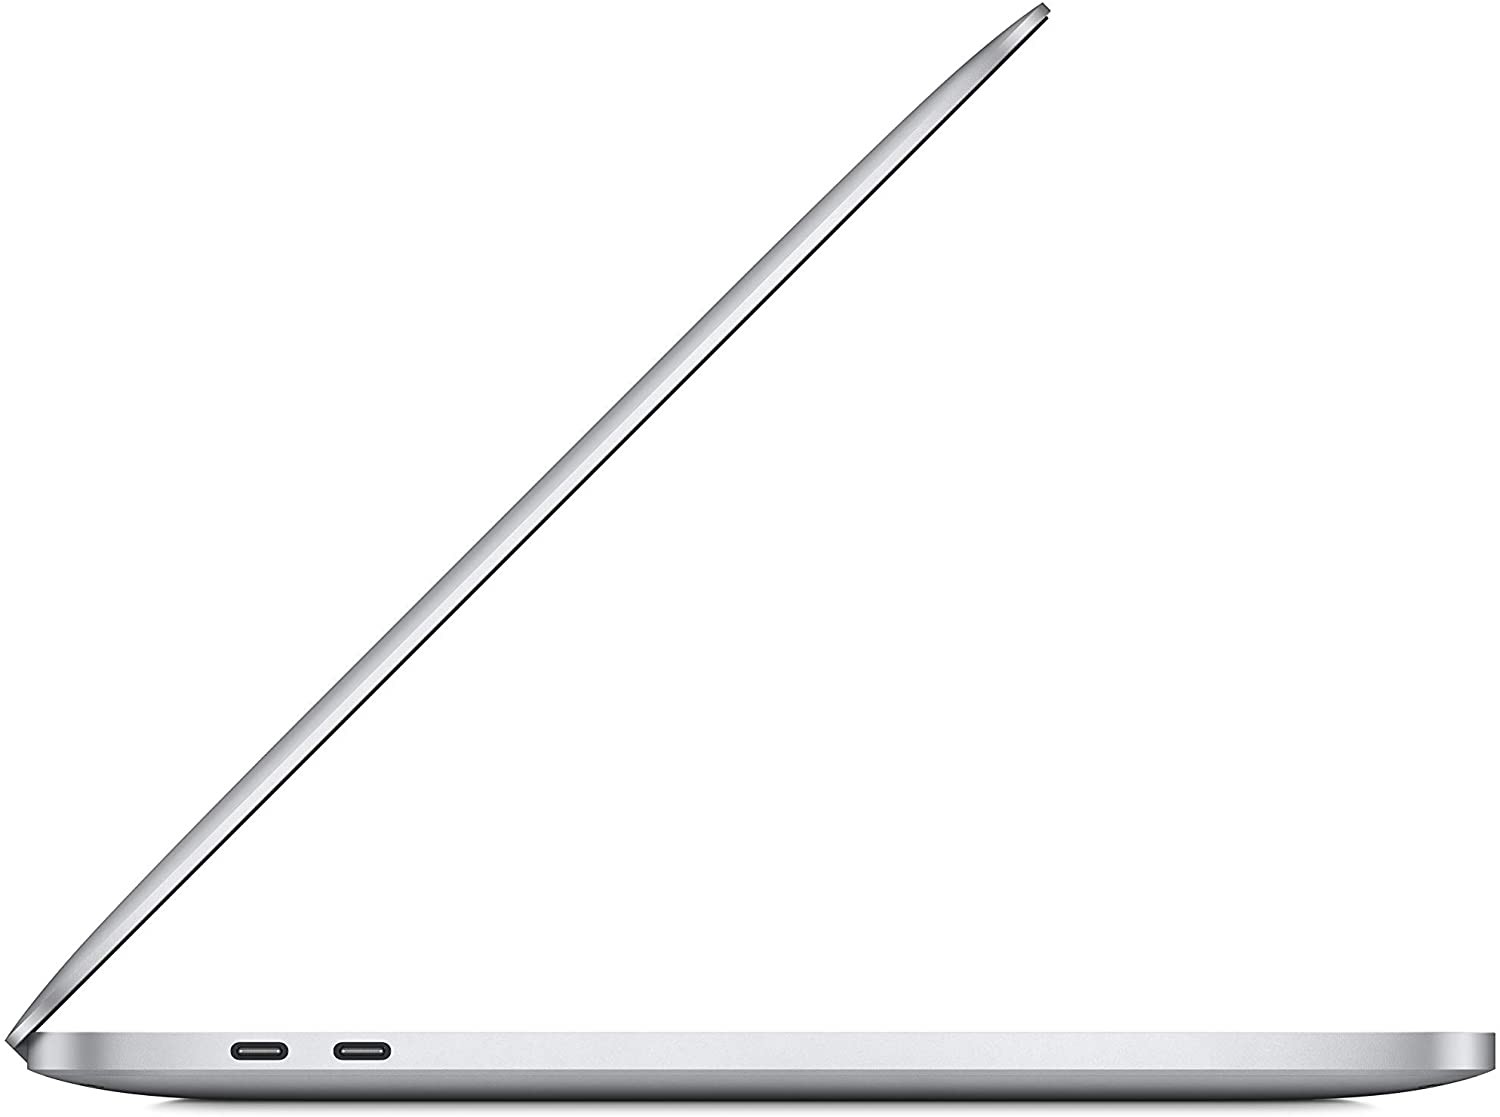 Apple MacBook Pro MYDC2 13.3 inch Retina M1 chip 8-core CPU 8C GPU 8GB unified memory 512GB SSD Silver